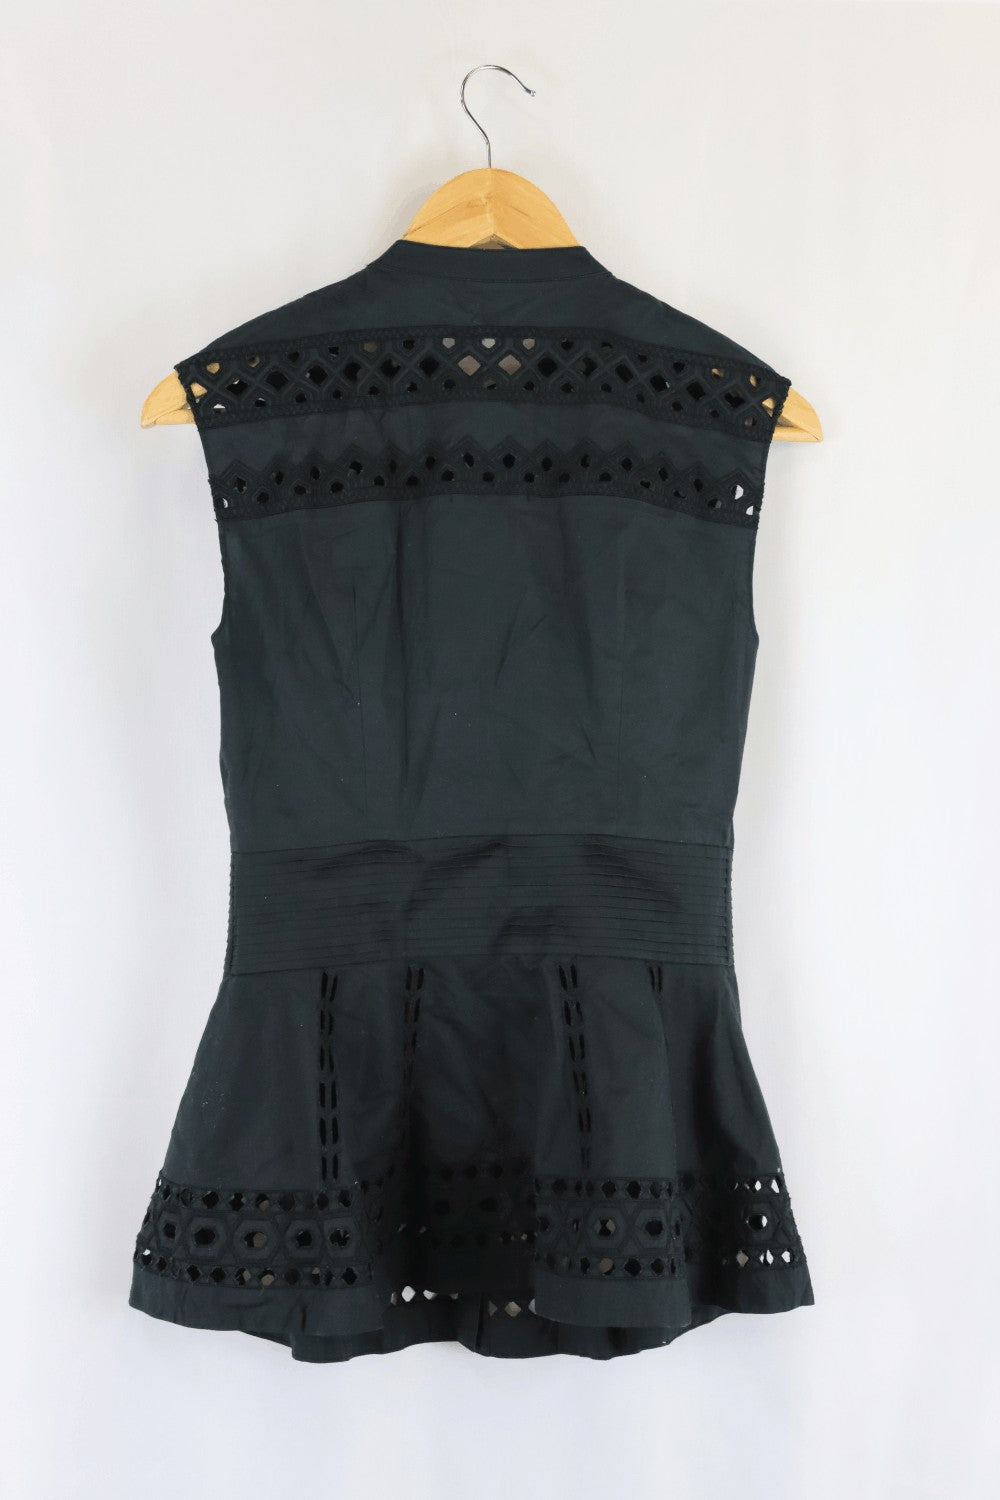 Catherine Malandrino Black Lace Short Sleeve Top 2 (AU 10)